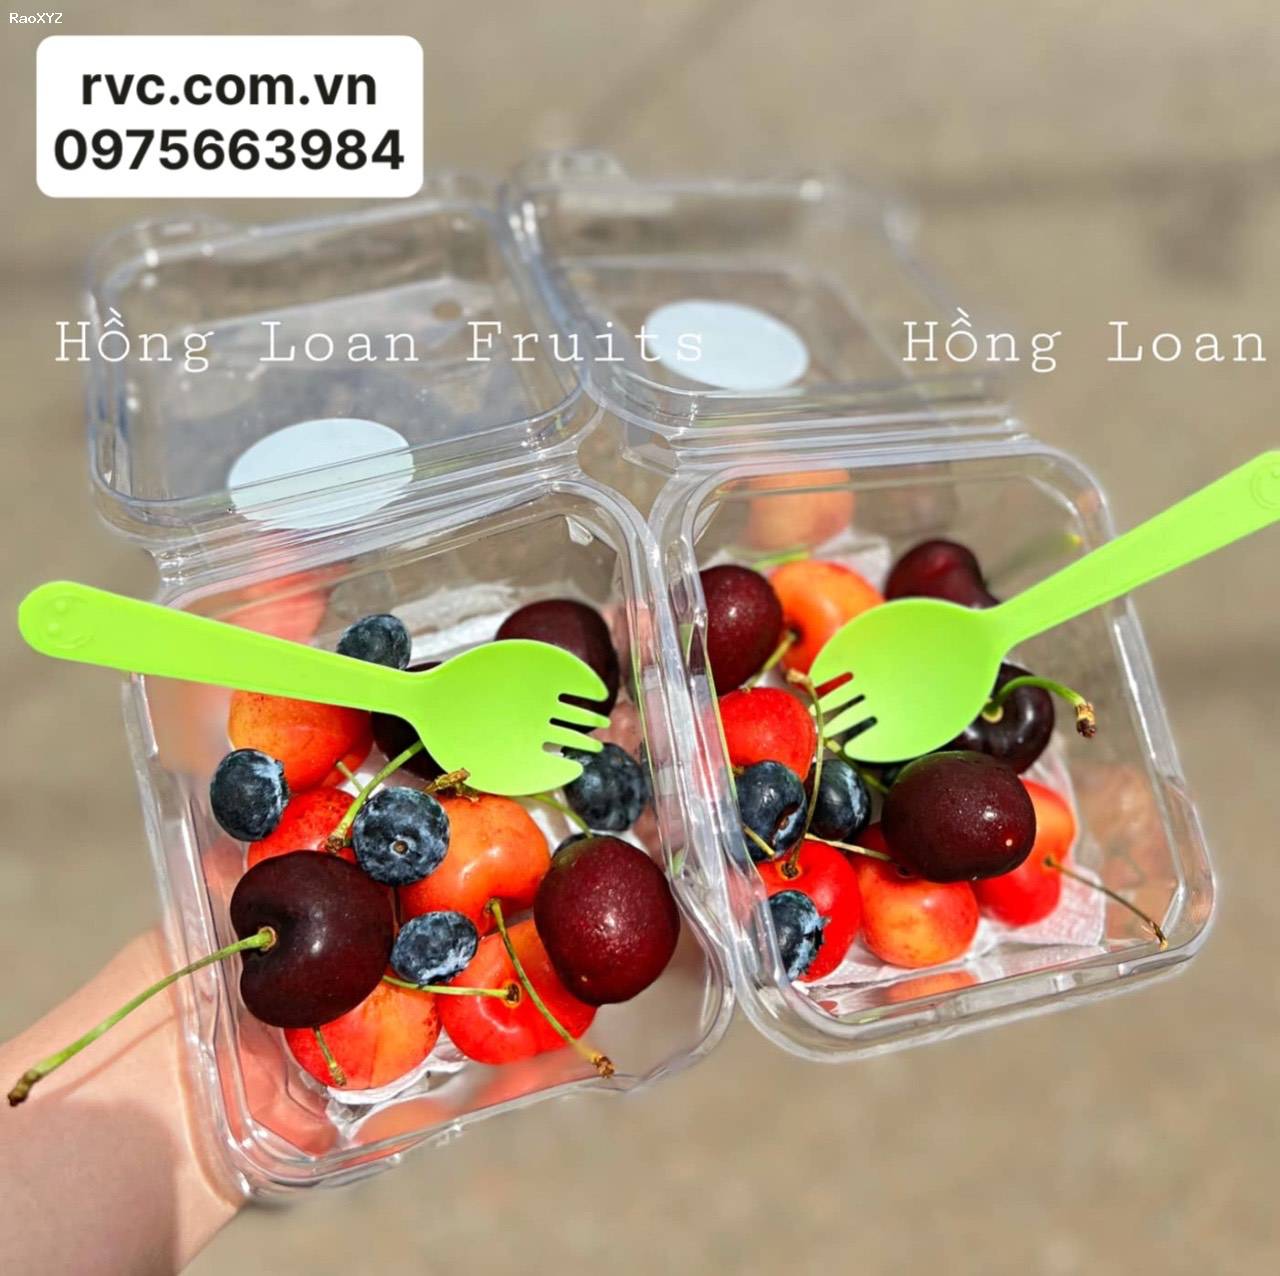 Cung cấp hộp nhựa đựng hoa quả đảm bảo chất lượng